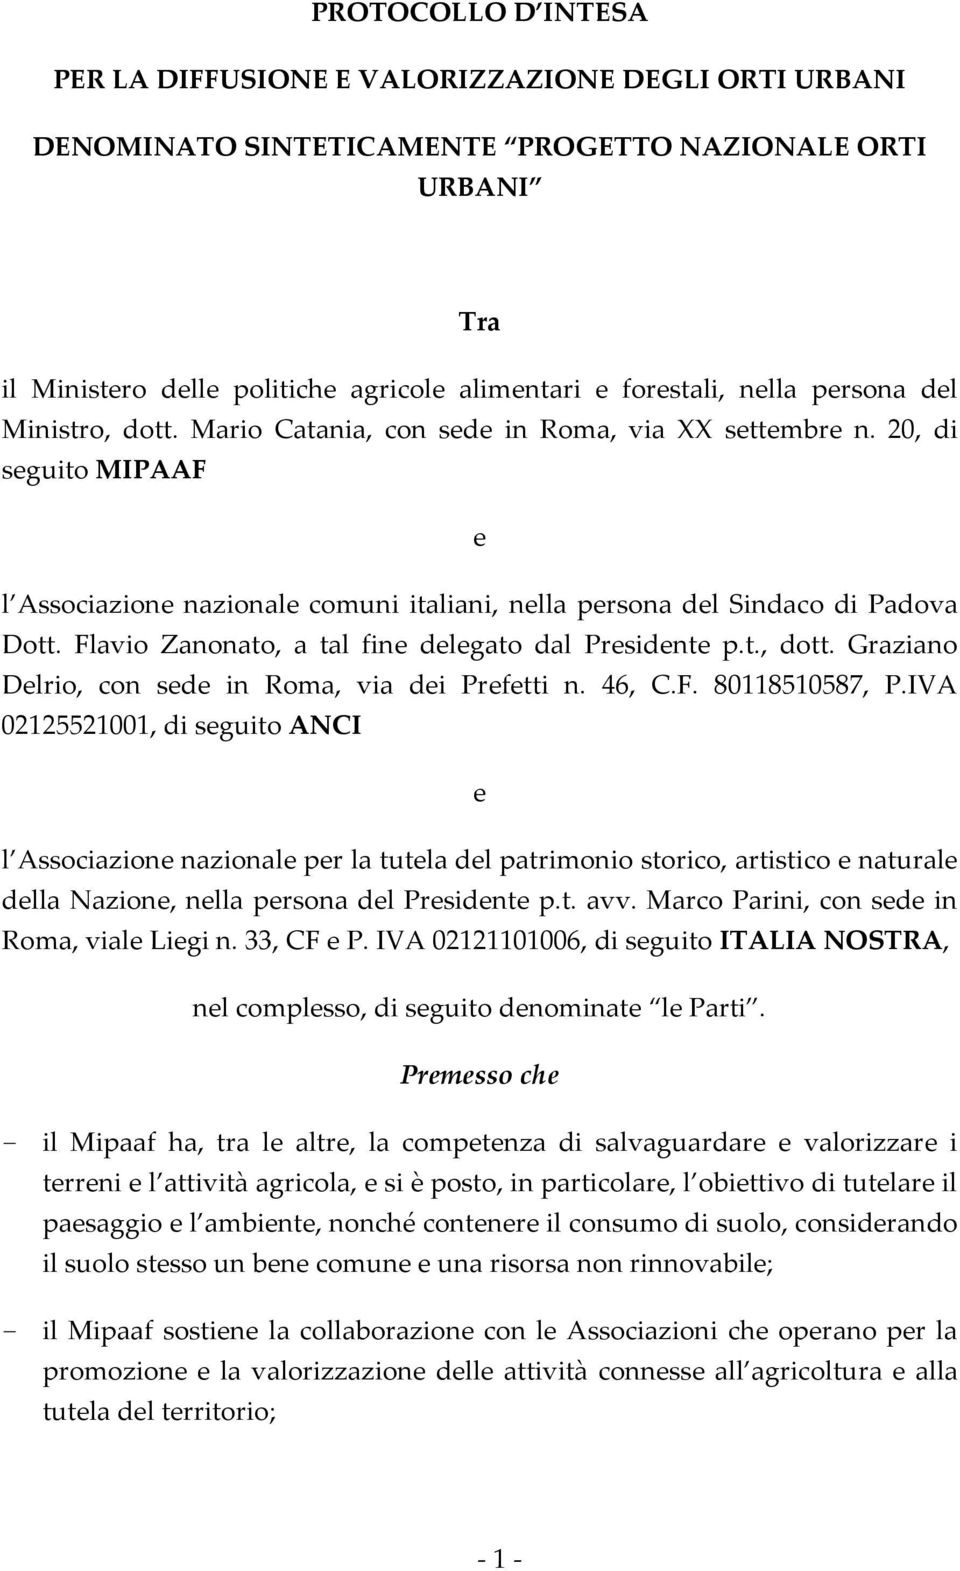 Flavio Zanonato, a tal fine delegato dal Presidente p.t., dott. Graziano Delrio, con sede in Roma, via dei Prefetti n. 46, C.F. 80118510587, P.